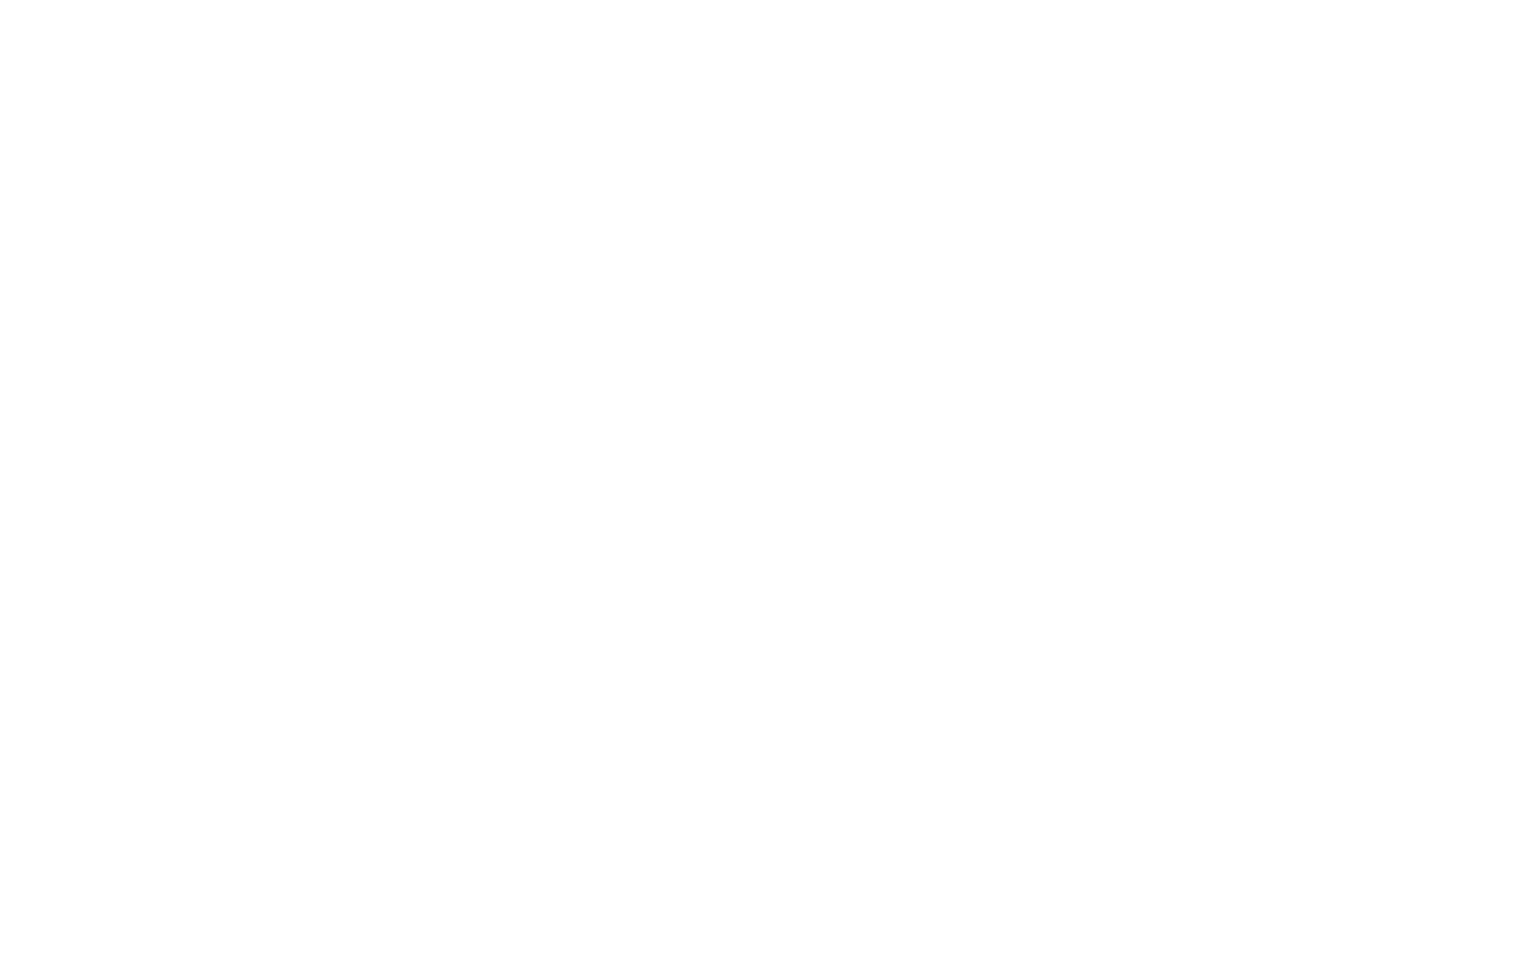 iata_tids